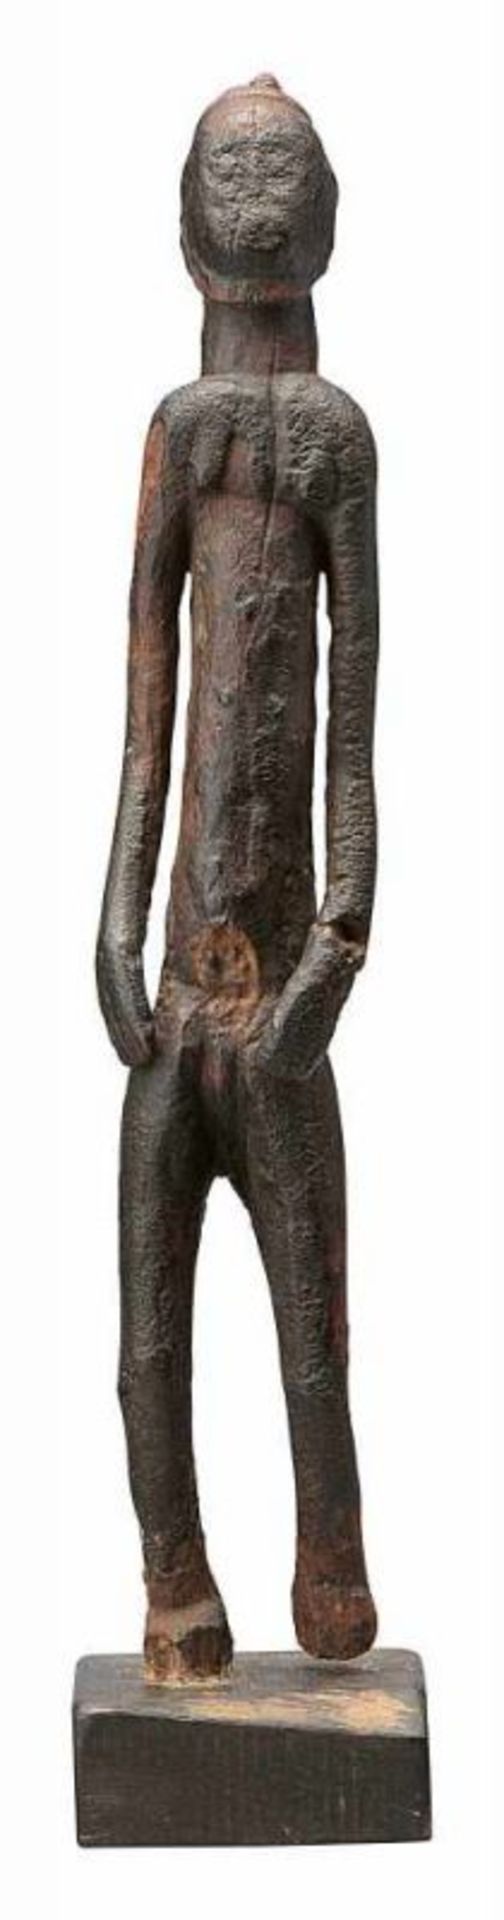 Stehende Ahnenfigur der Baule Elfenbeinküste. Holz, geschnitzt und patiniert. Holzsockel später.